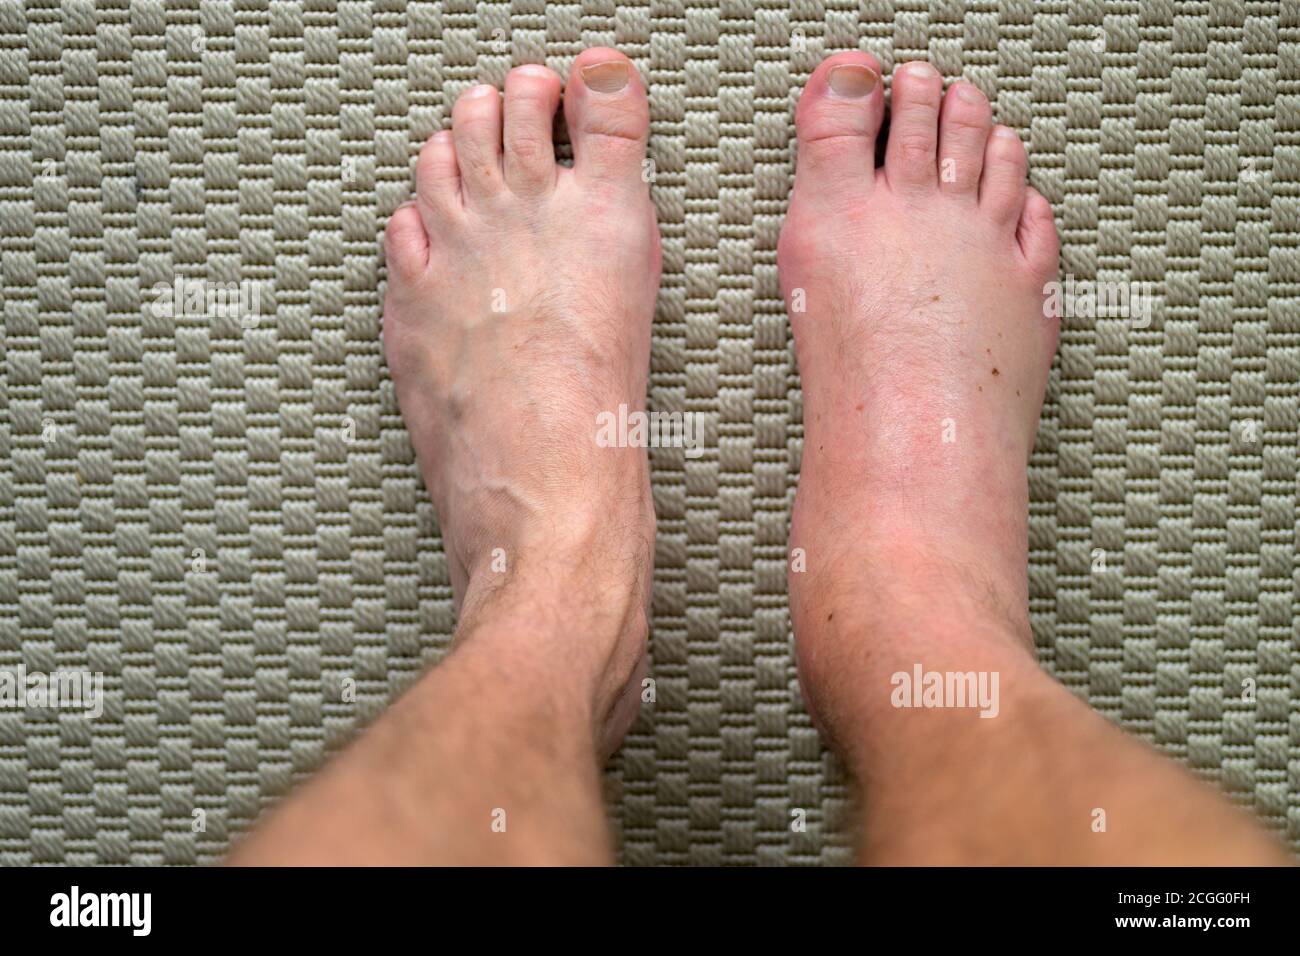 Homme avec un pied mal gonflé et enflammé d'une allergie réaction après une piqûre ou une morsure d'insecte en regardant vers le bas ses pieds d'en haut avec la guérison Banque D'Images